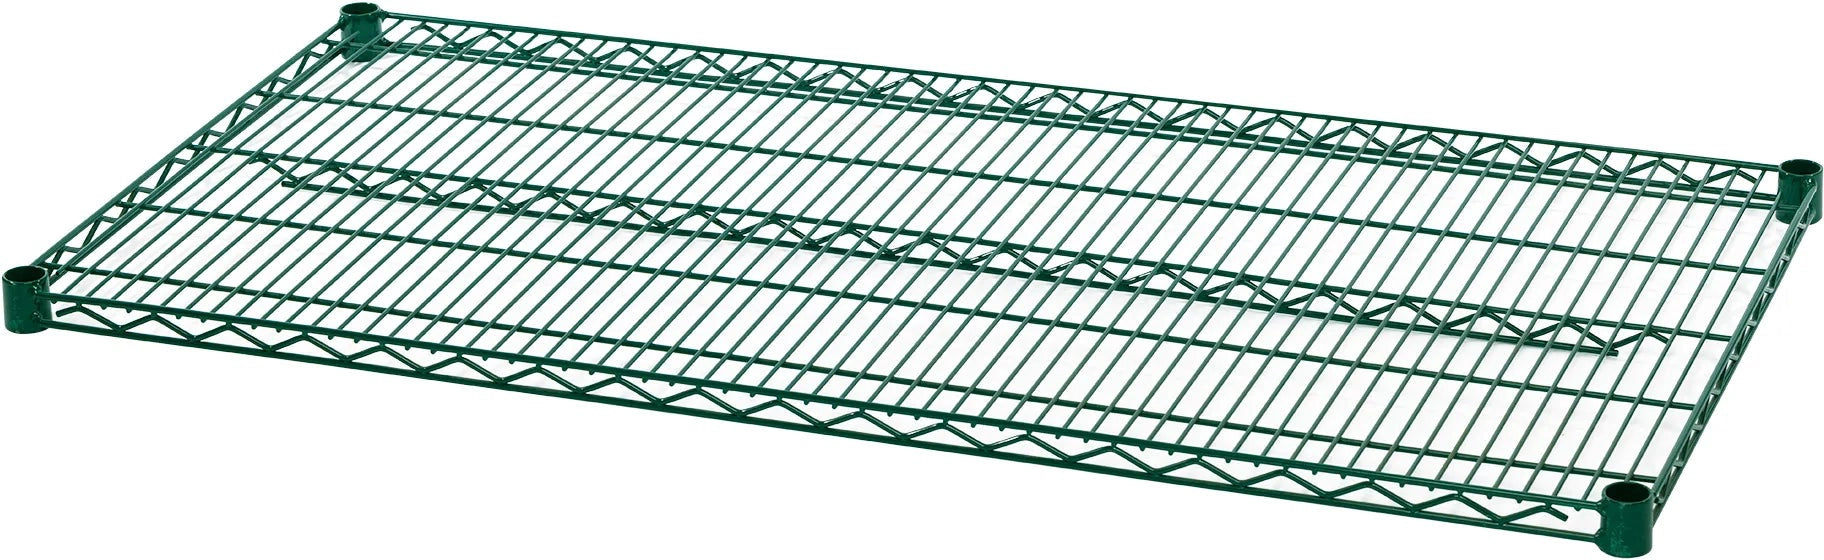 Julien - Rosko 48" x 14" Shelf for Wire Shelving, Green Epoxy - RO-WS-S4814-GE